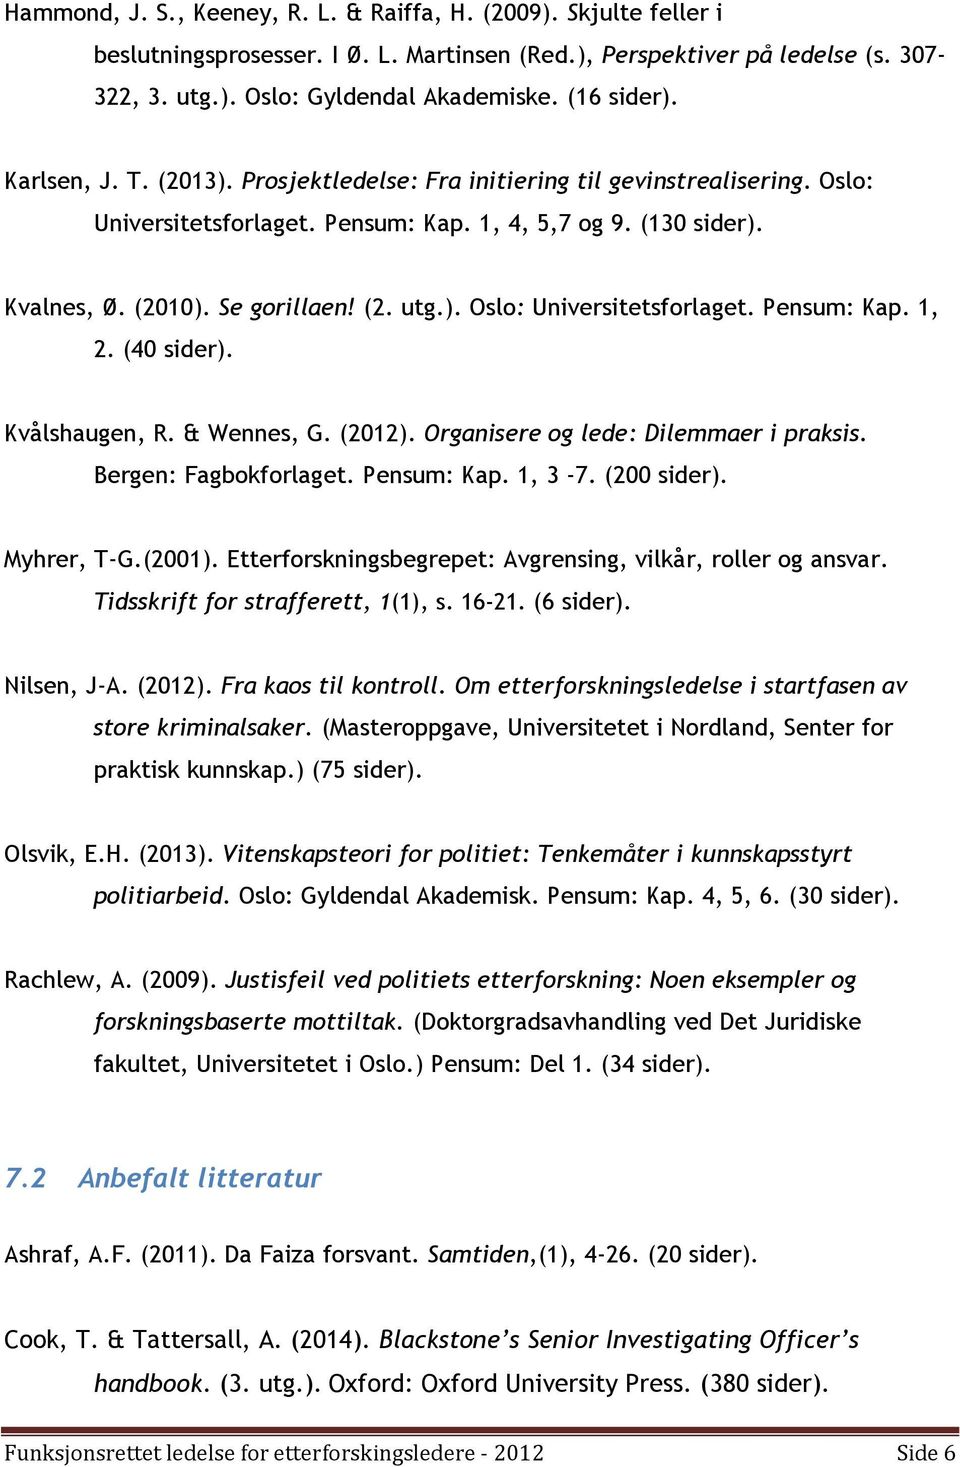 ). Oslo: Universitetsforlaget. Pensum: Kap. 1, 2. (40 sider). Kvålshaugen, R. & Wennes, G. (2012). Organisere og lede: Dilemmaer i praksis. Bergen: Fagbokforlaget. Pensum: Kap. 1, 3-7. (200 sider).